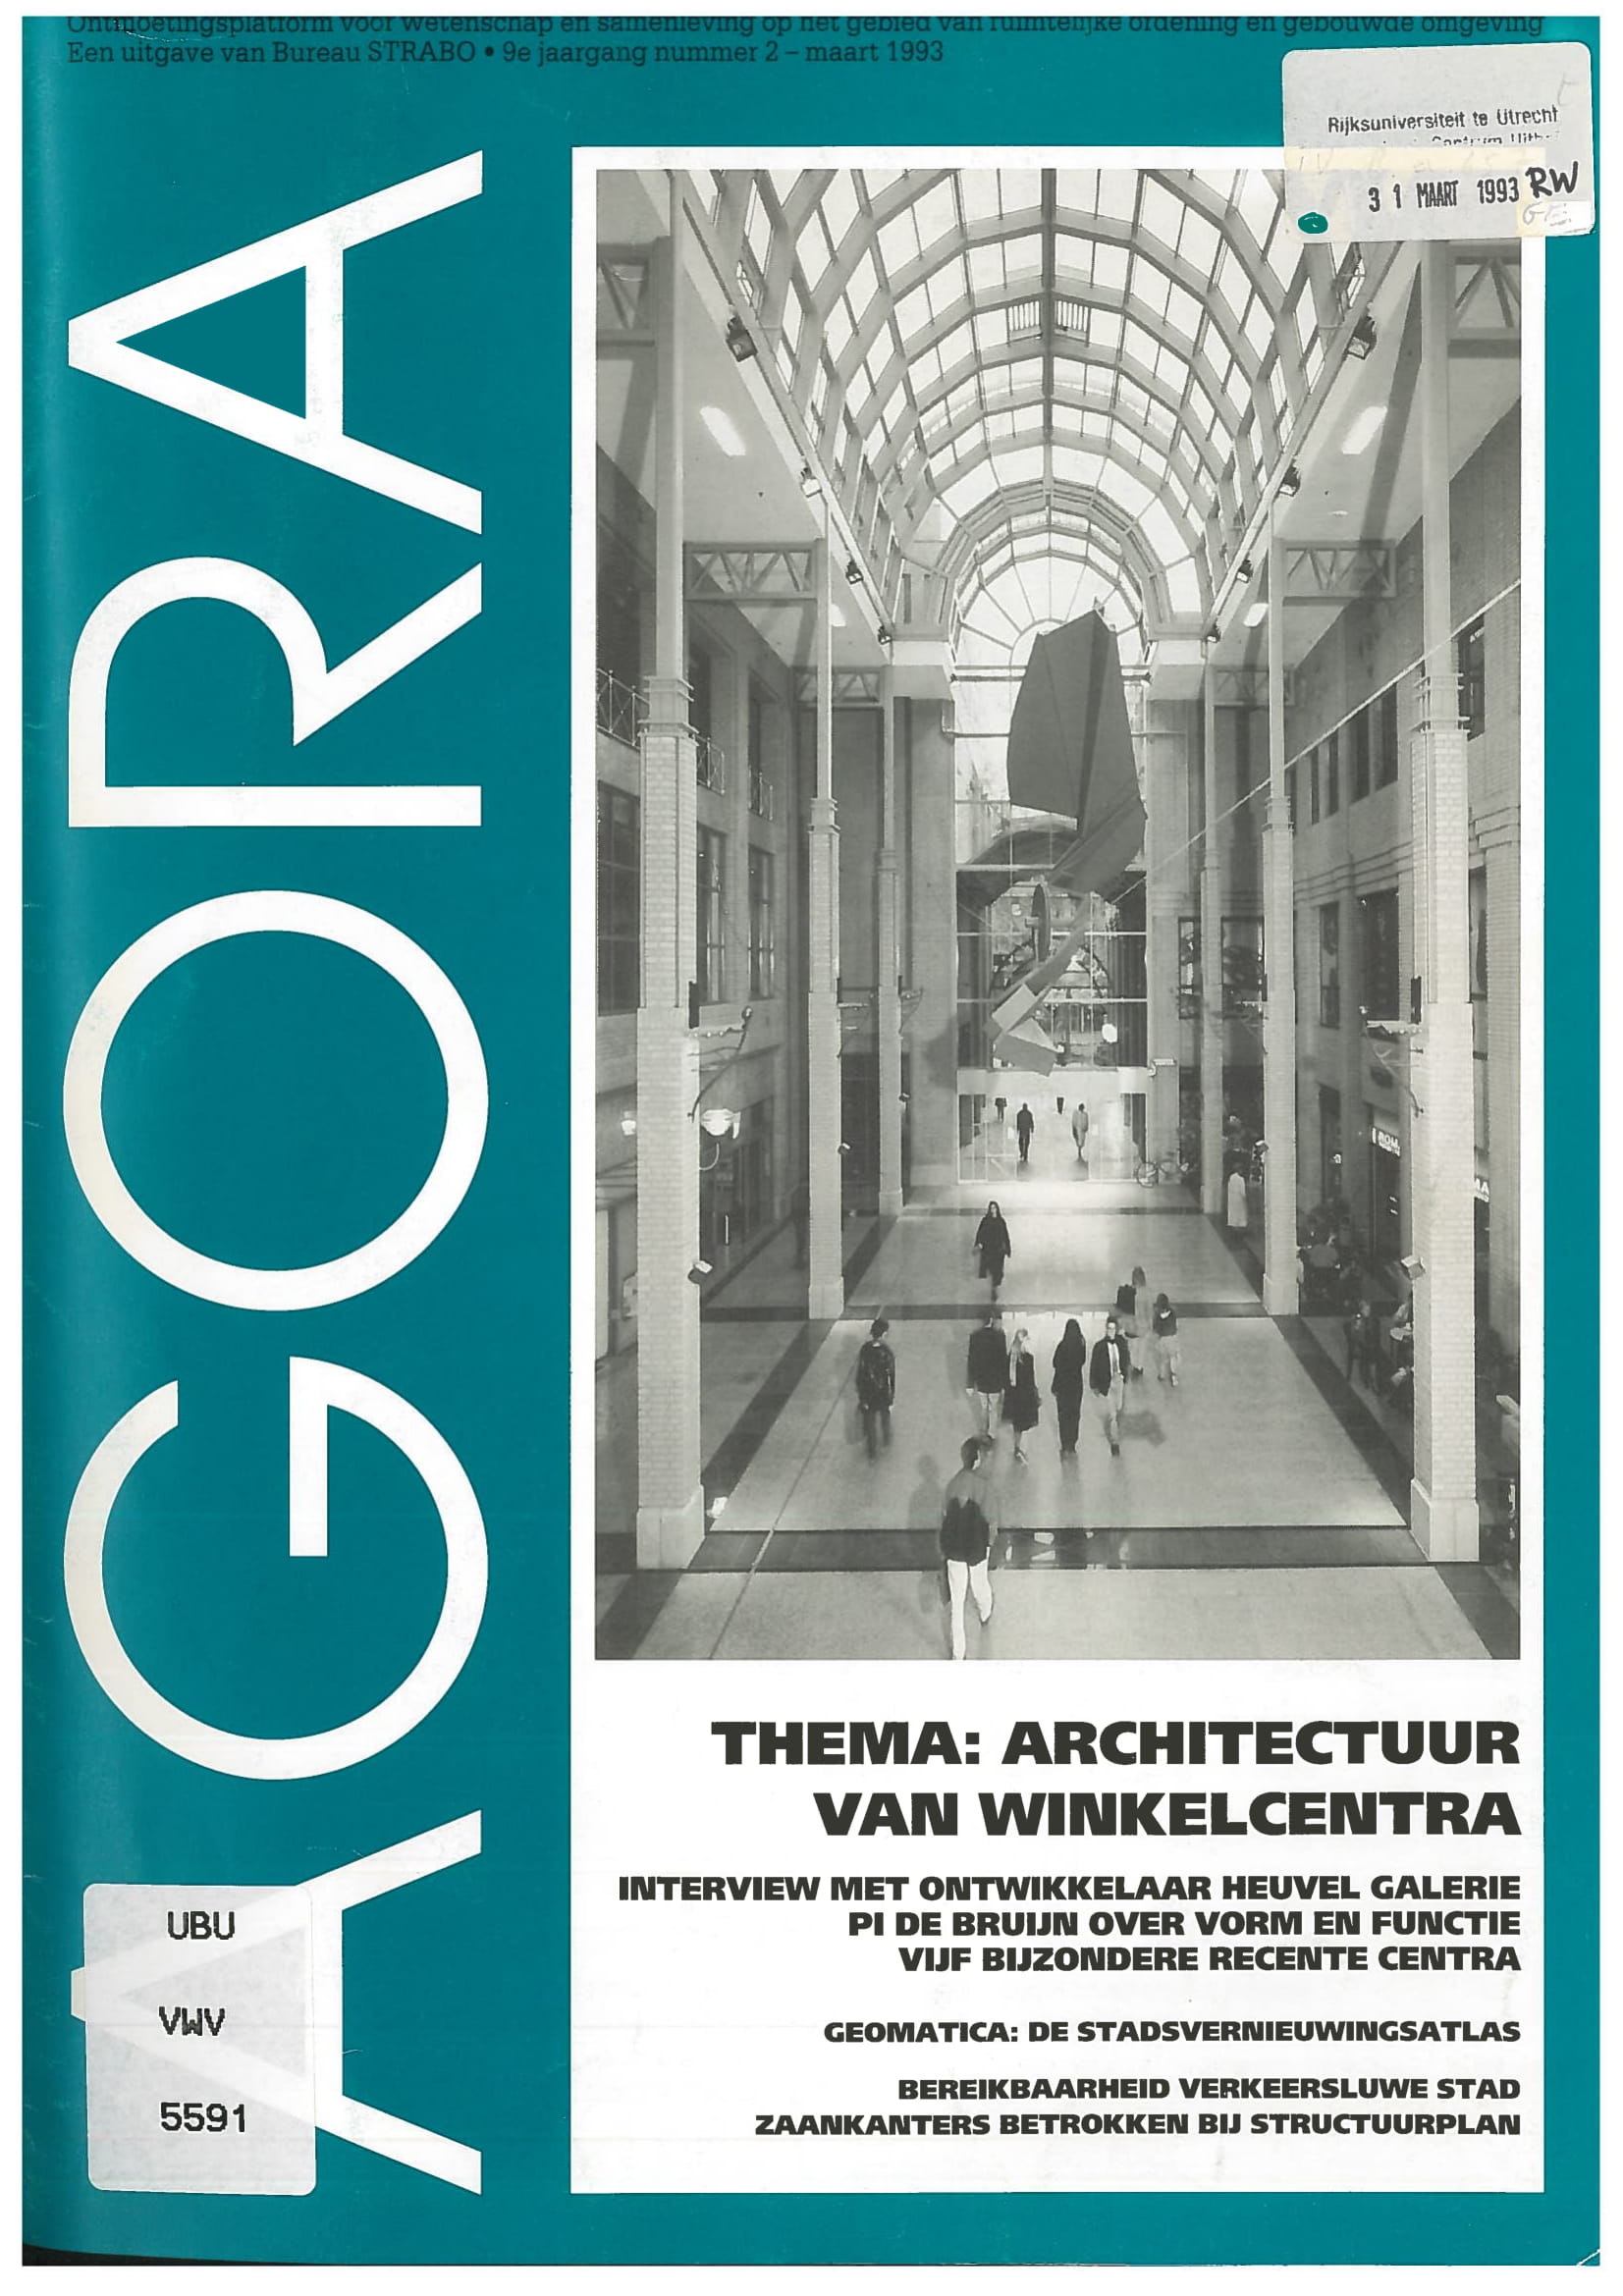 Volume 9 • Issue 2 • 1993 • Architectuur van winkelcentra